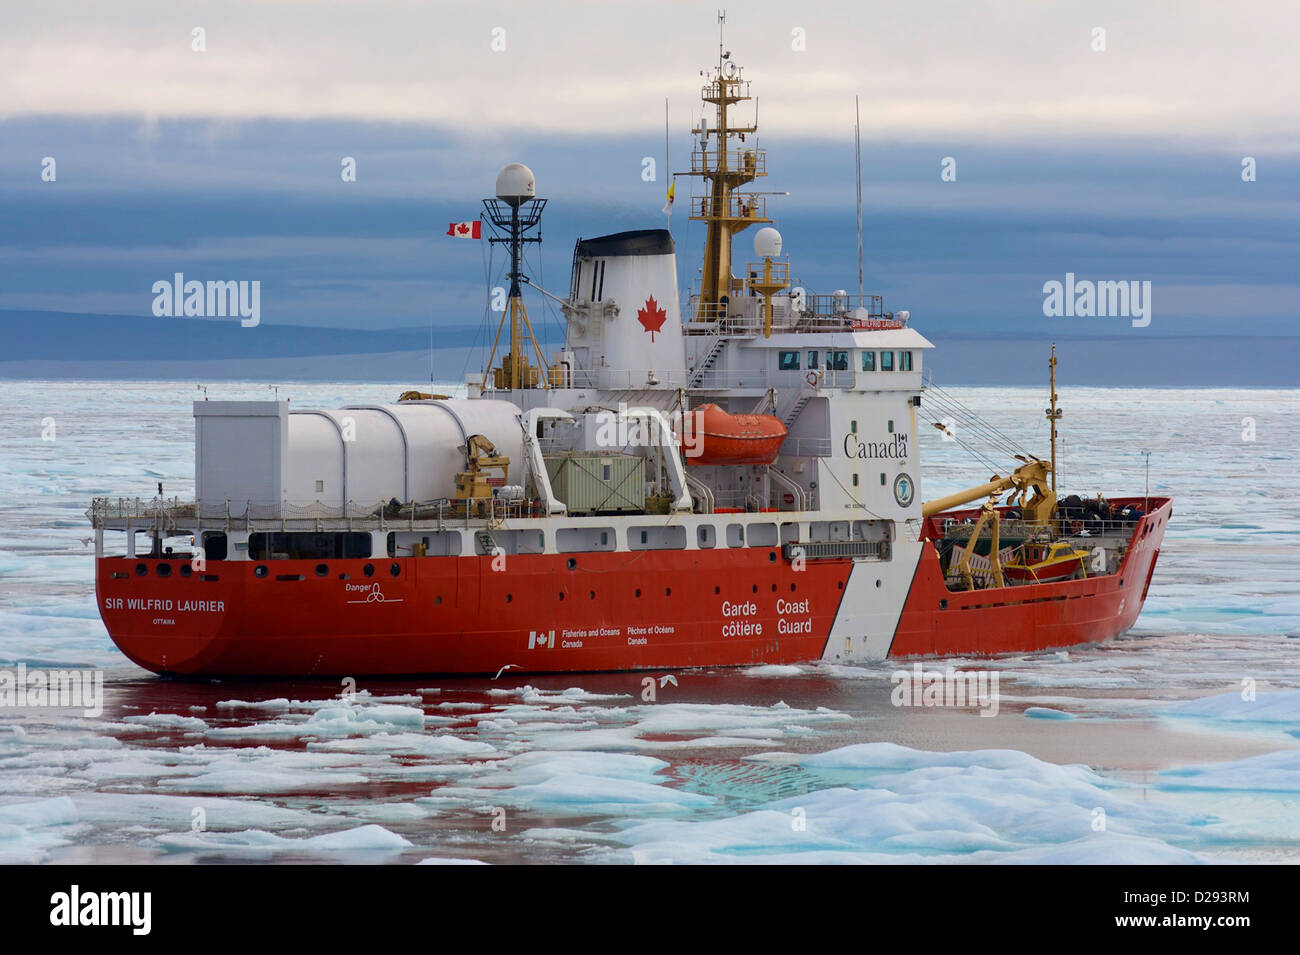 Brise-glace de la Garde côtière canadienne, Sir Wilfred Laurier, Passage du Nord-Ouest, du Nunavut, de l'Arctique canadien Banque D'Images